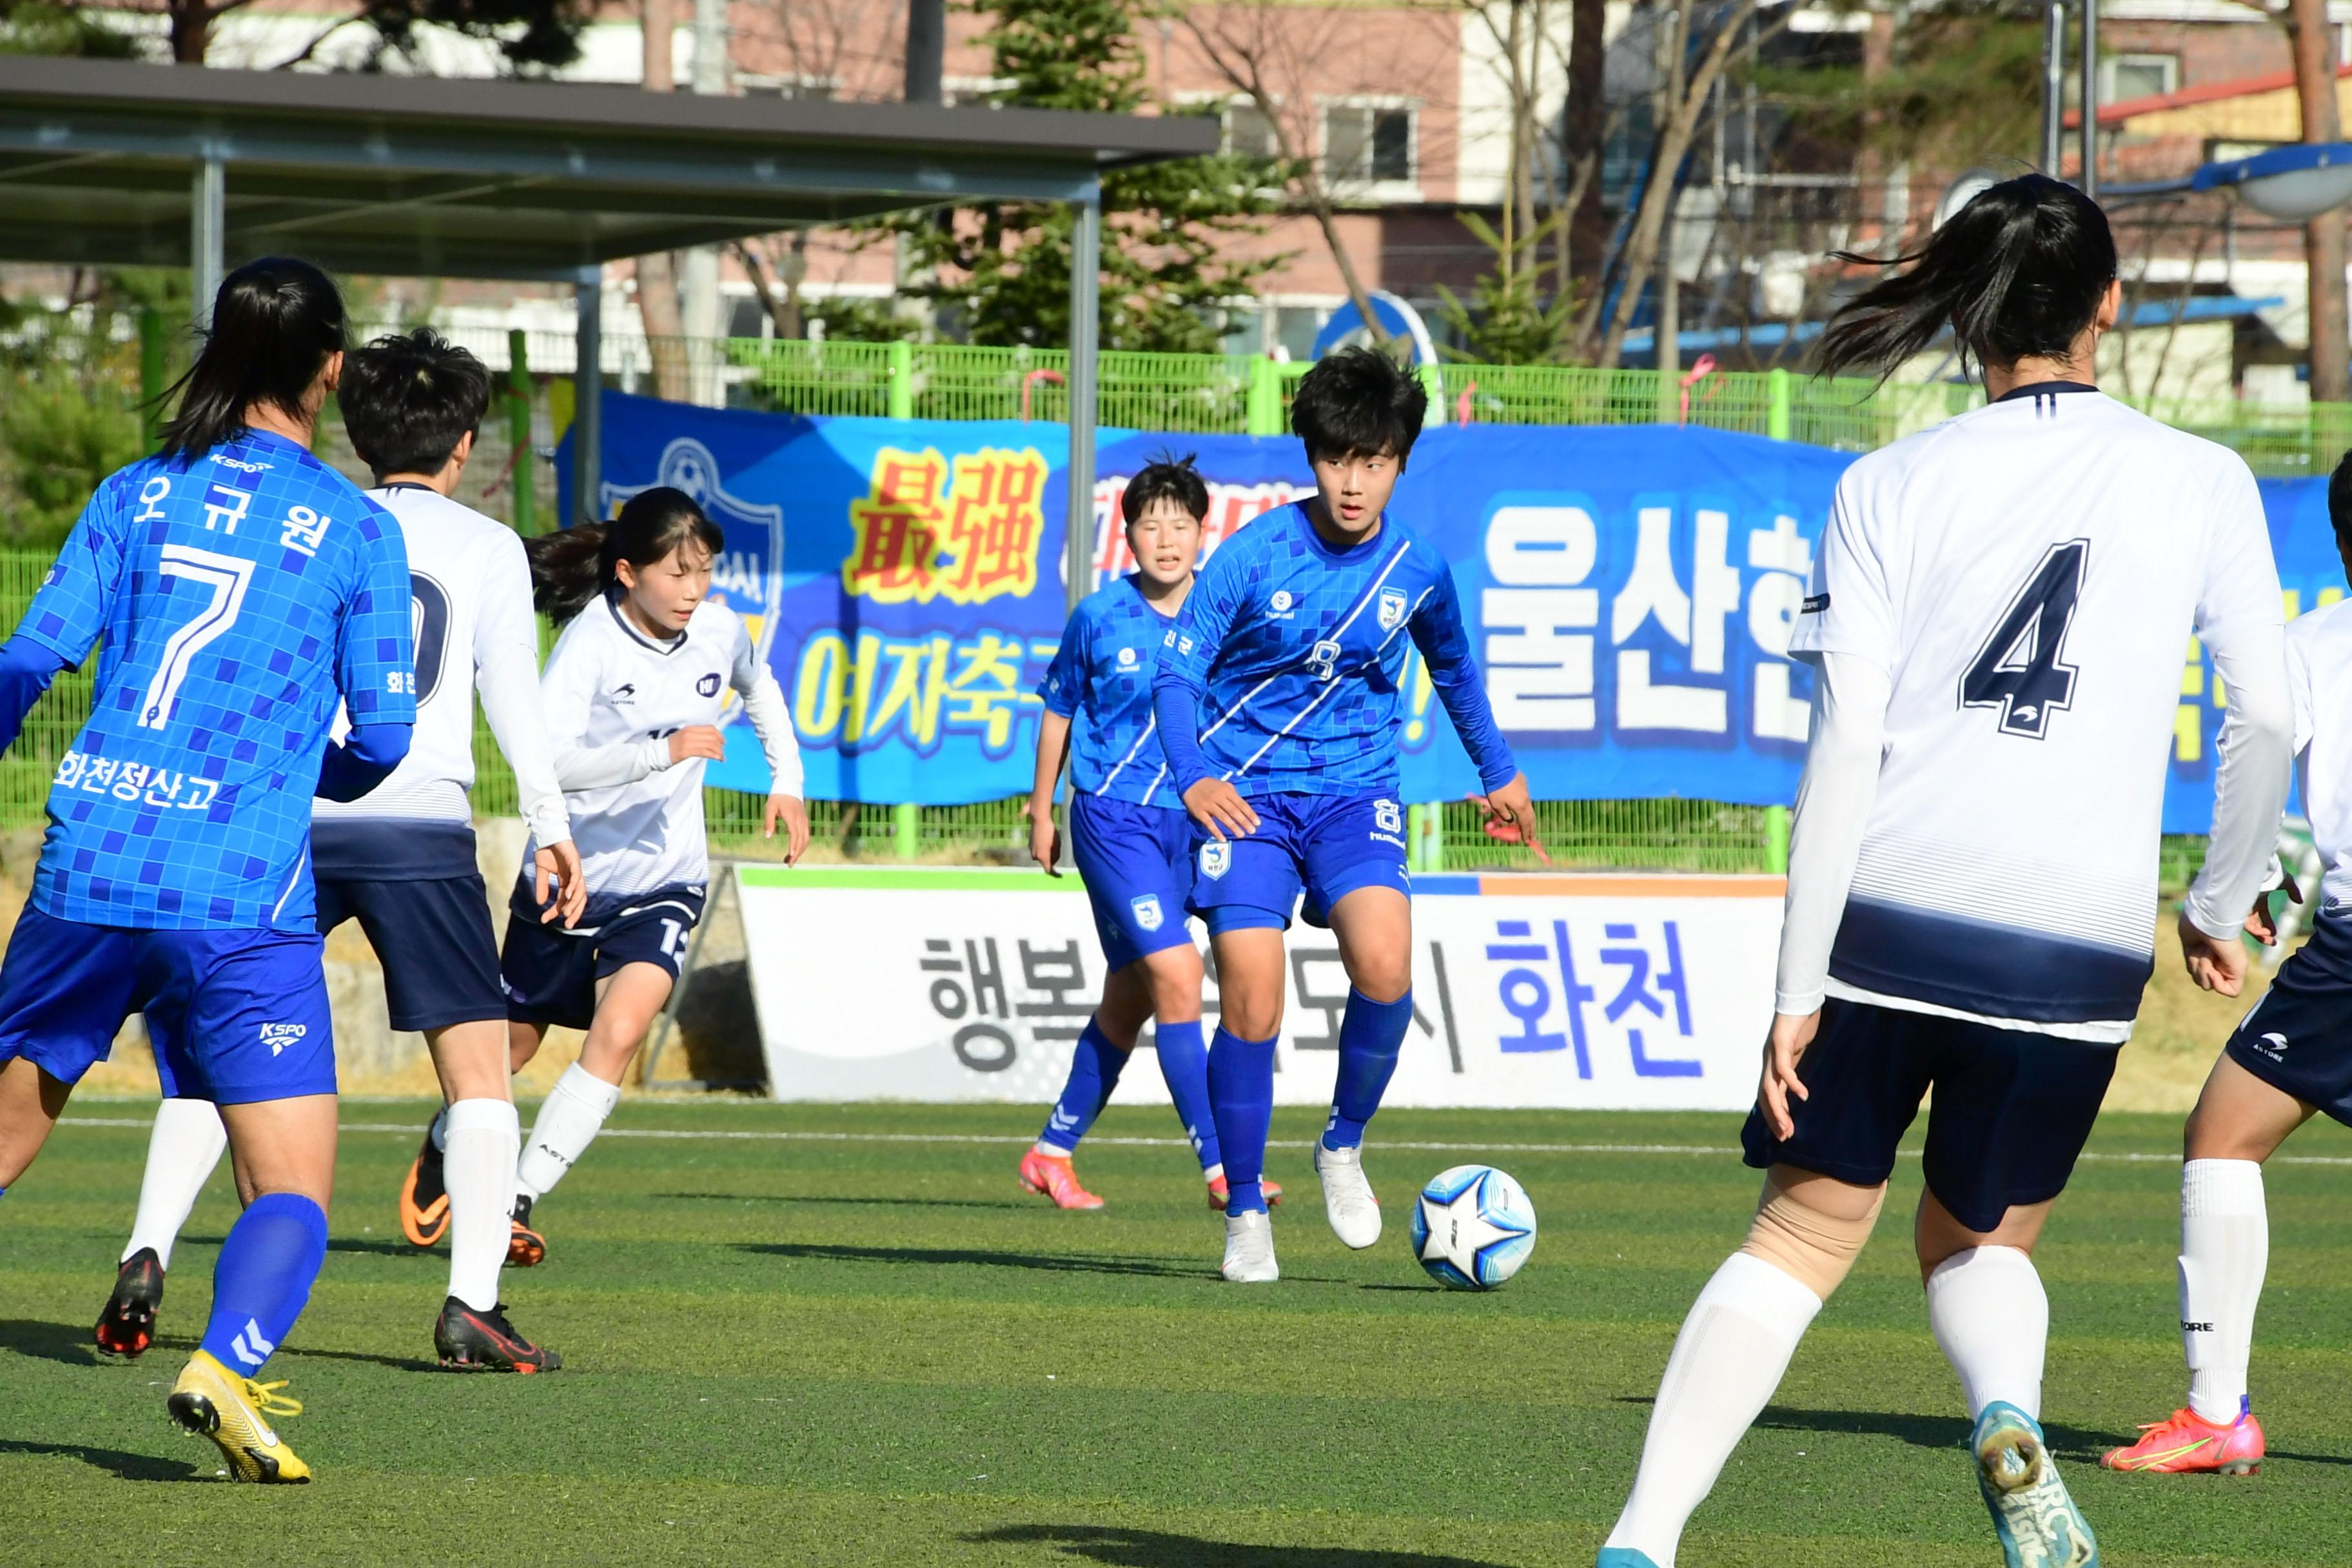 2021 행복교육도시화천 춘계한국여자축구연맹전 의 사진